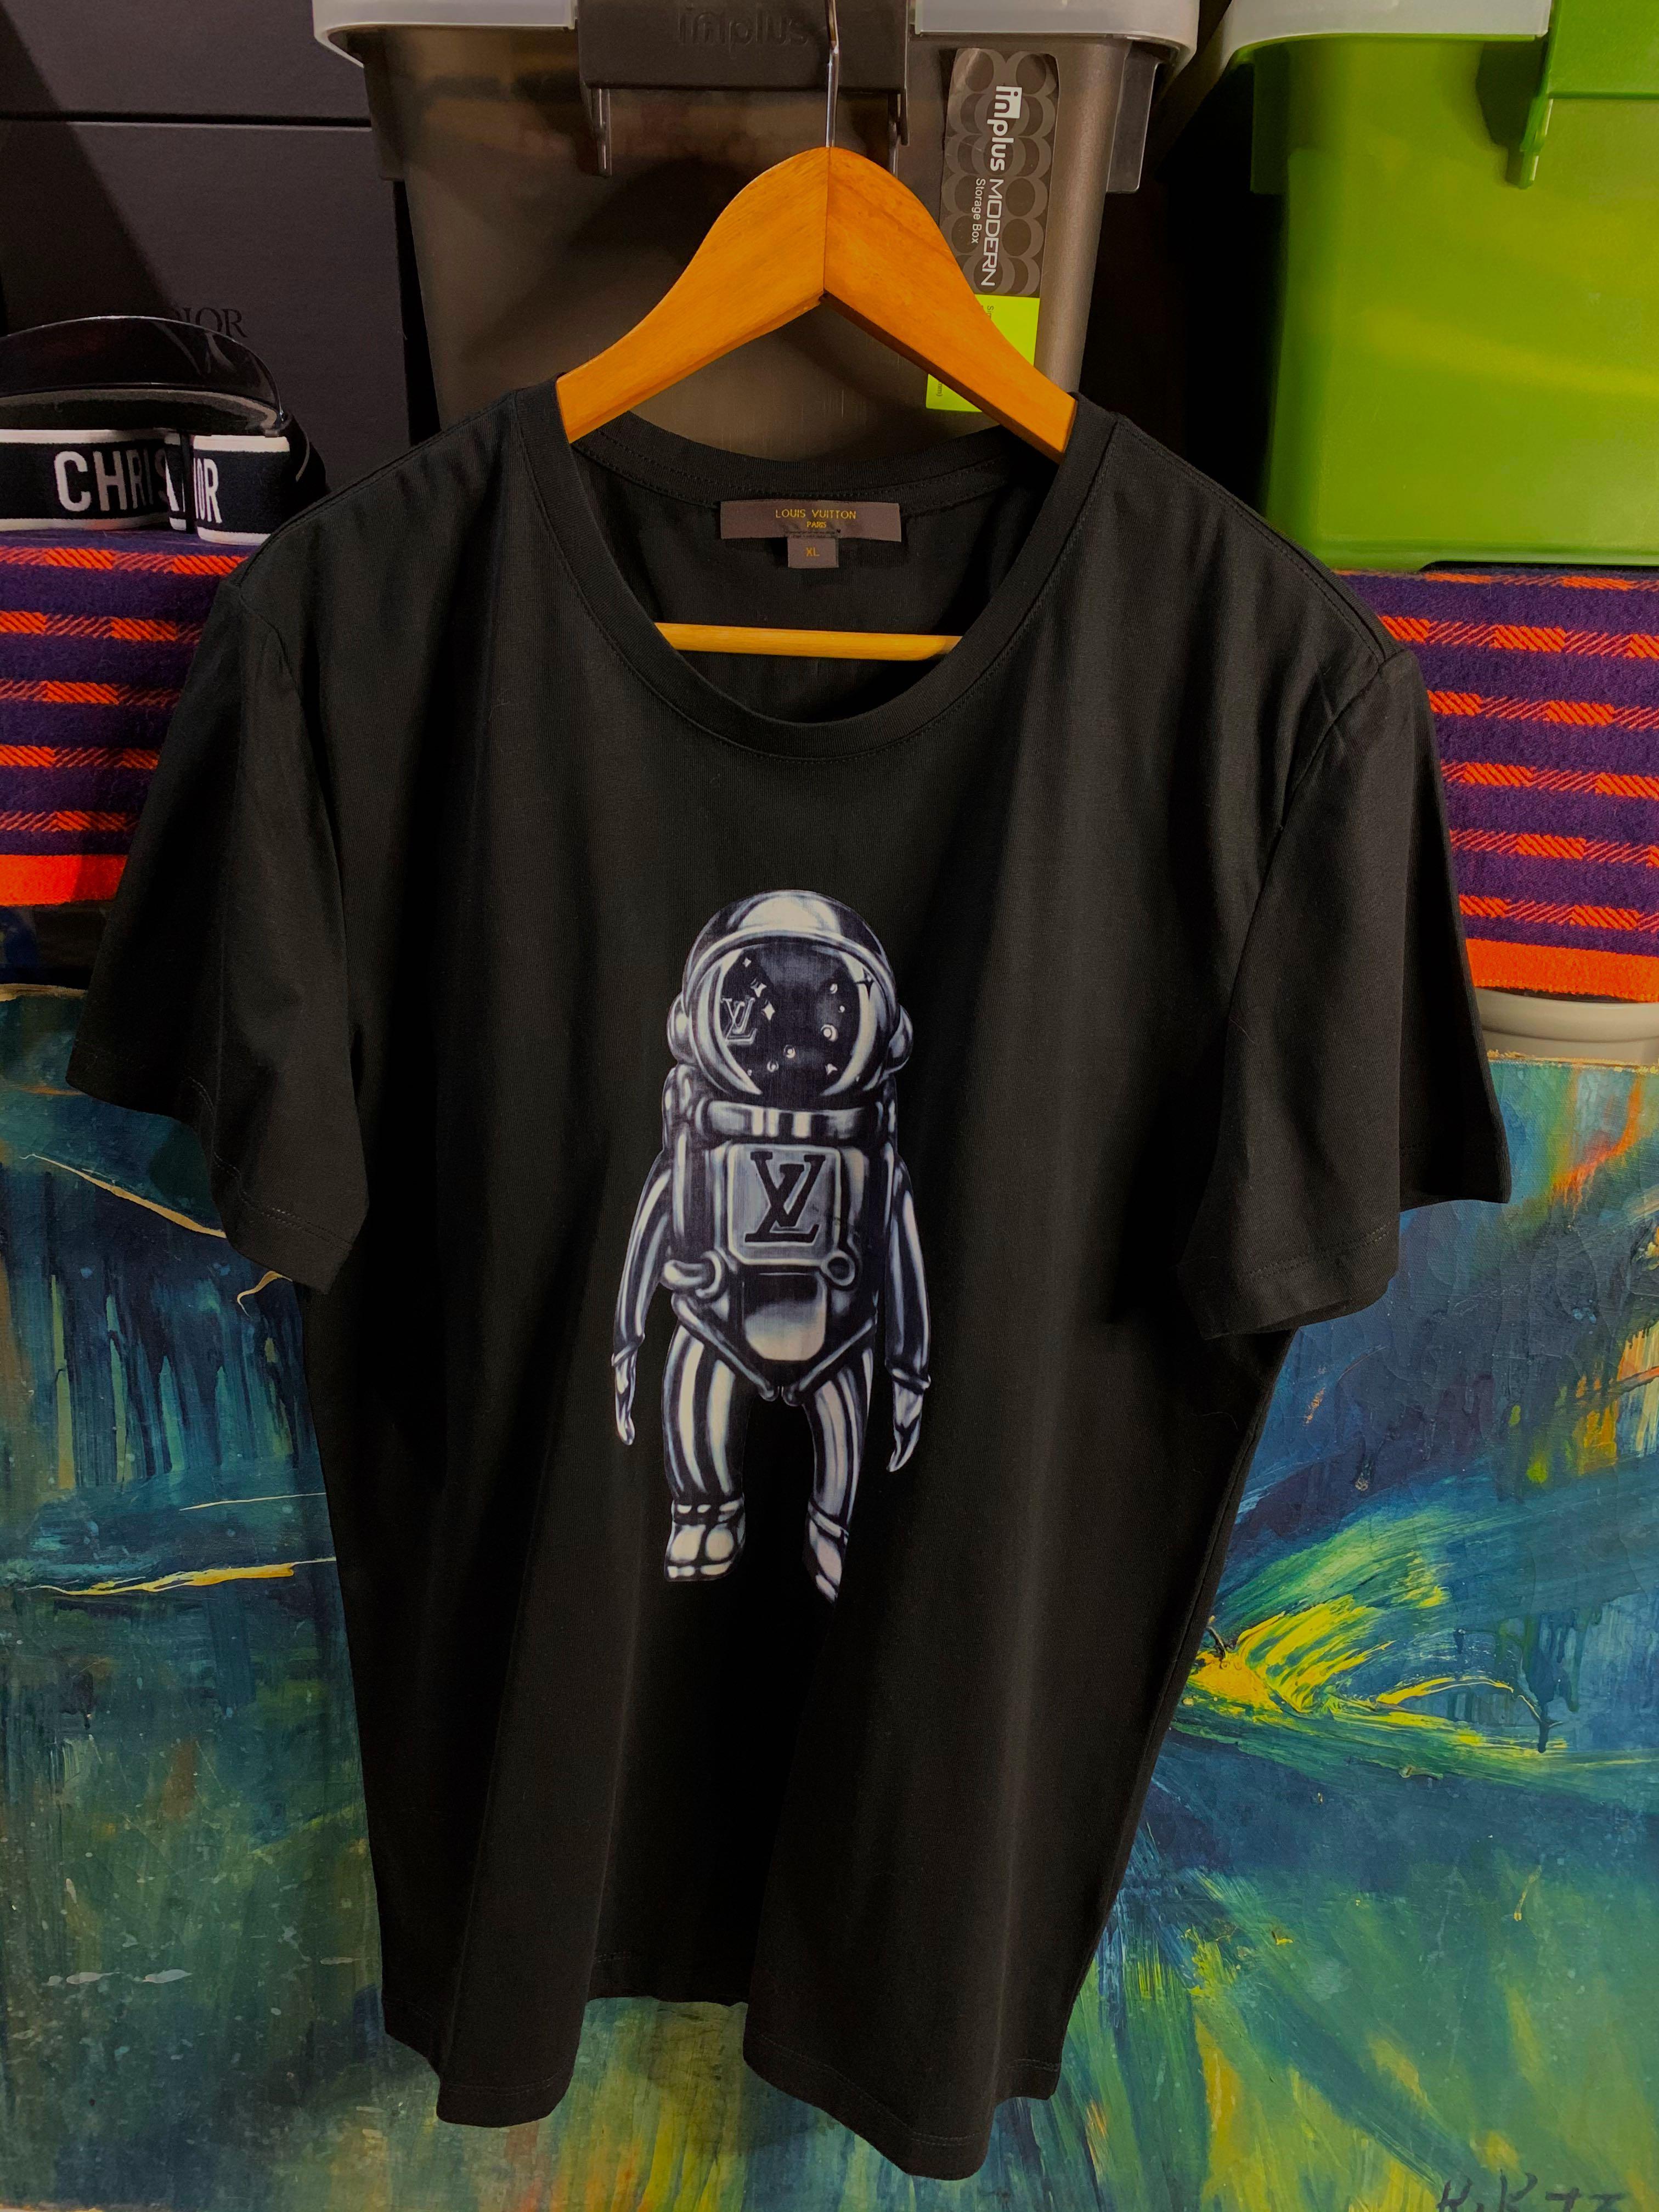 vuitton astronaut shirt